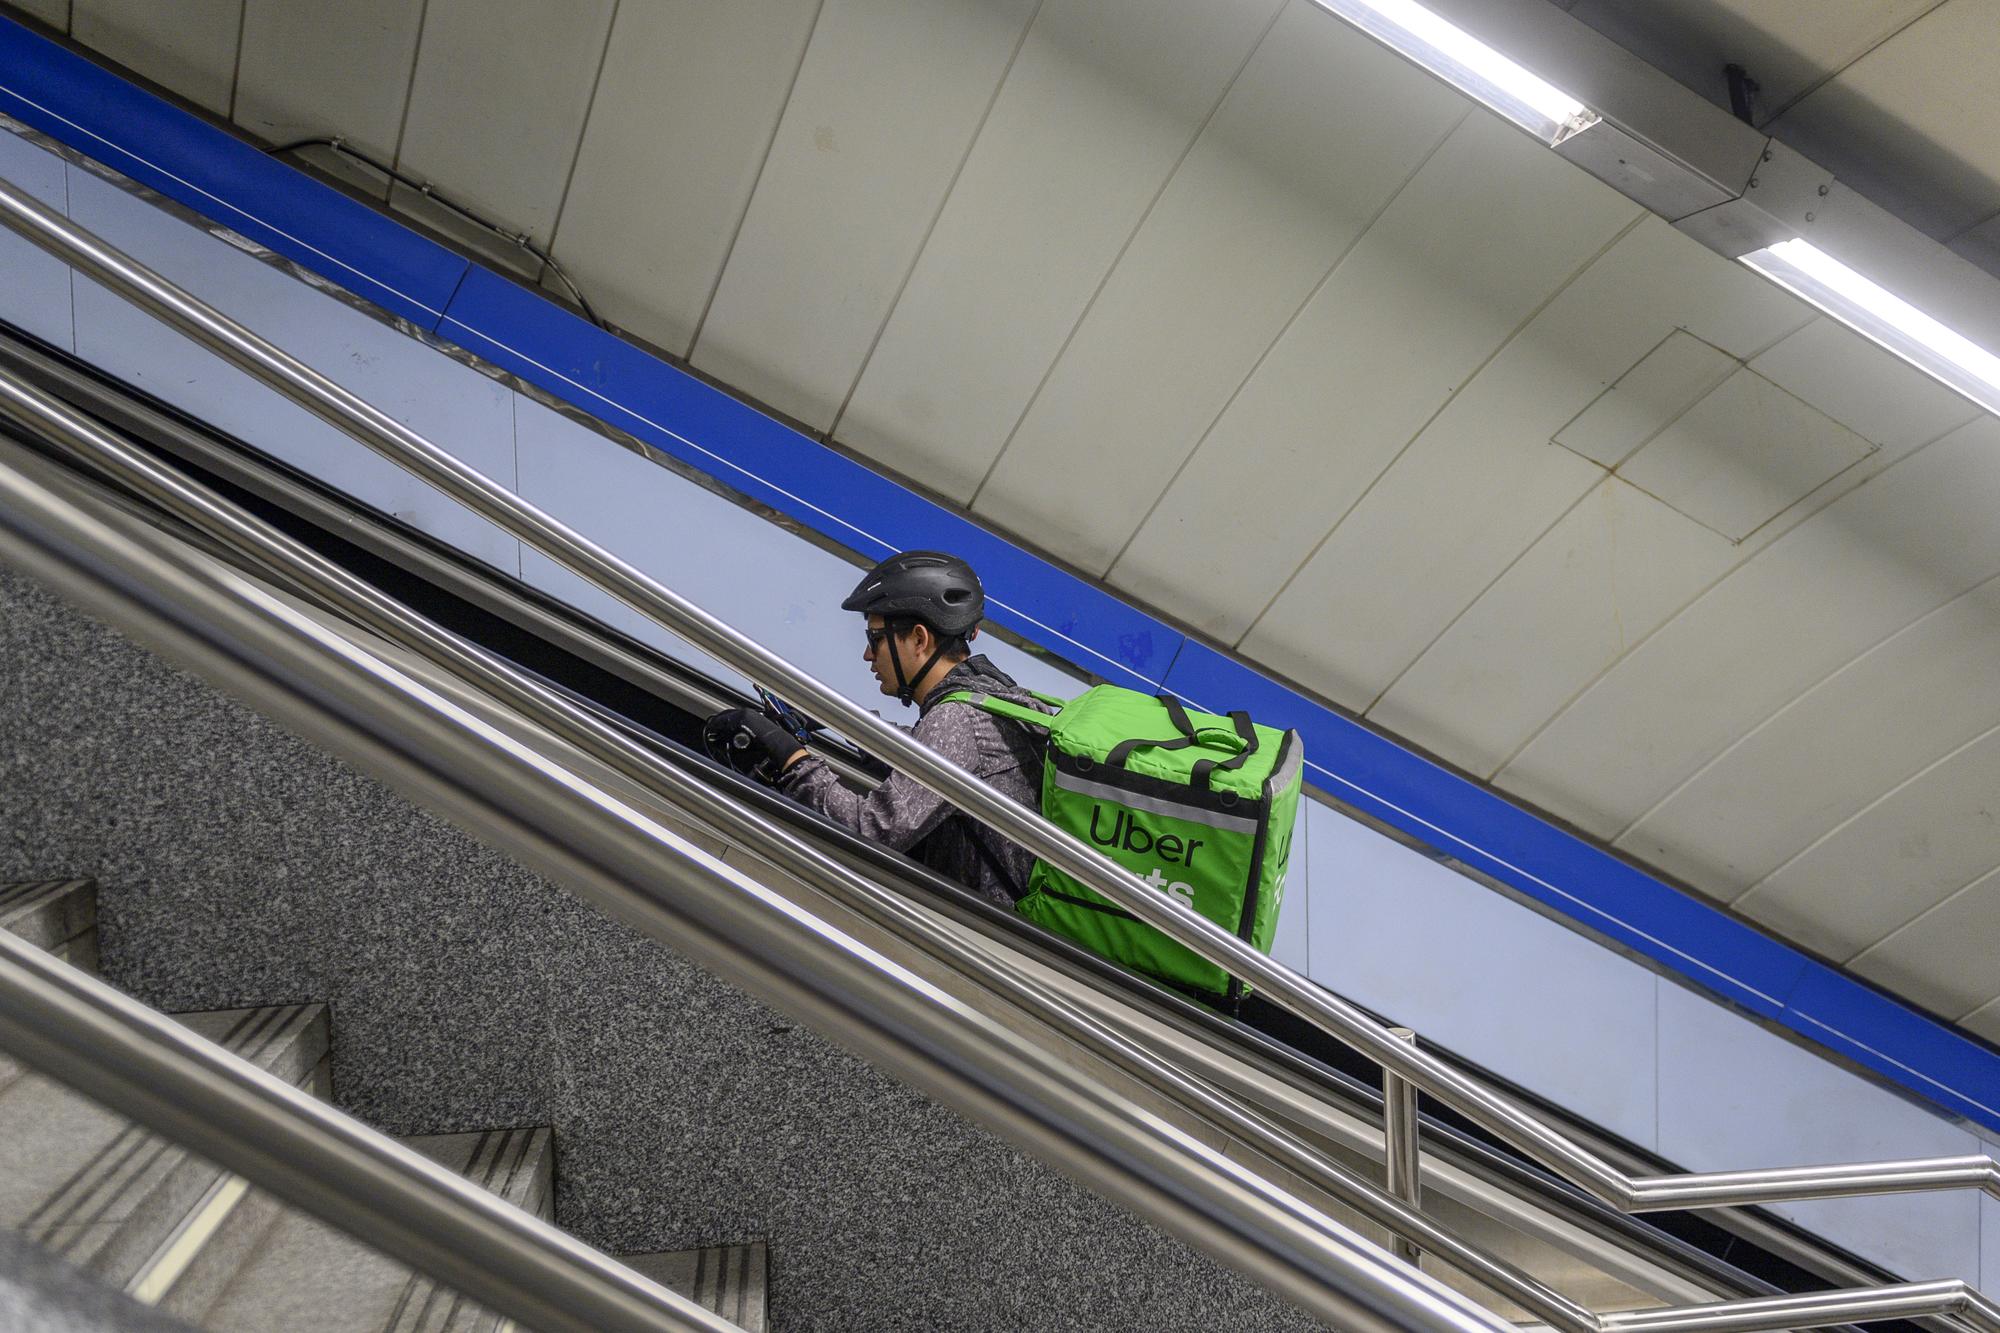 Rider en el metro